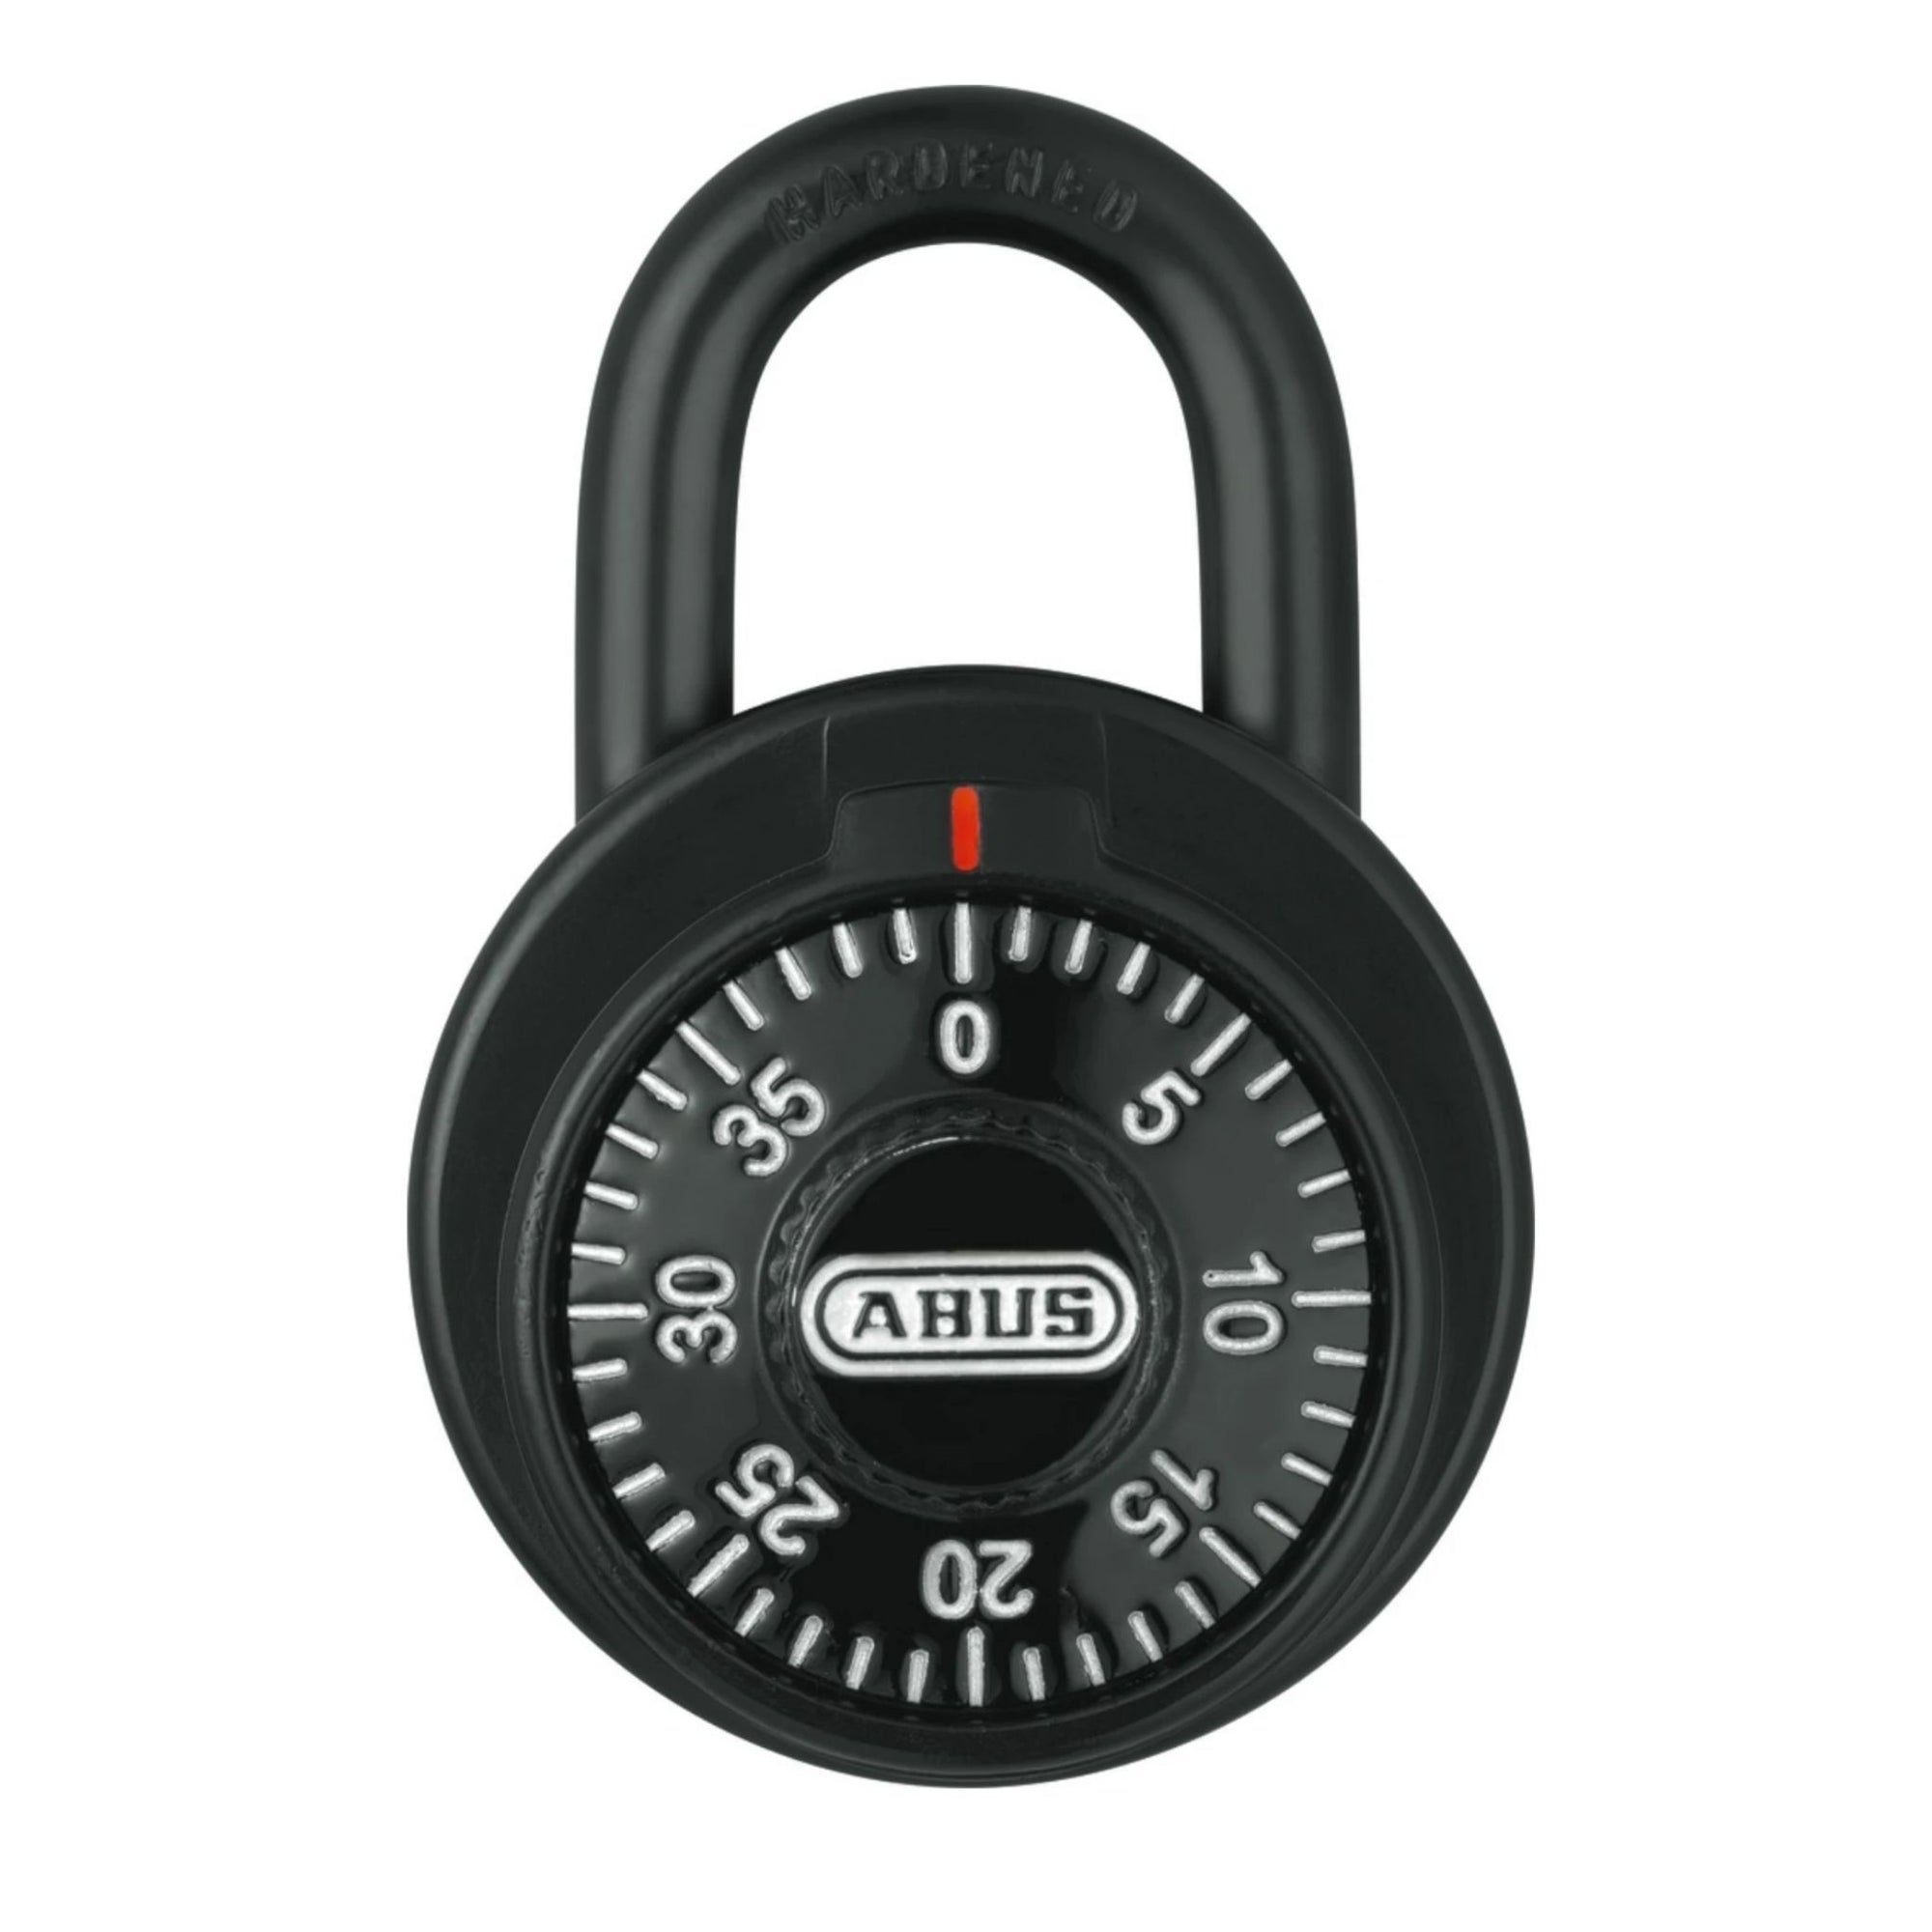 Abus 78/50 KC KA 504A Black Locker Padlock with Key Control Matched to Key Number KA504A - The Lock Source